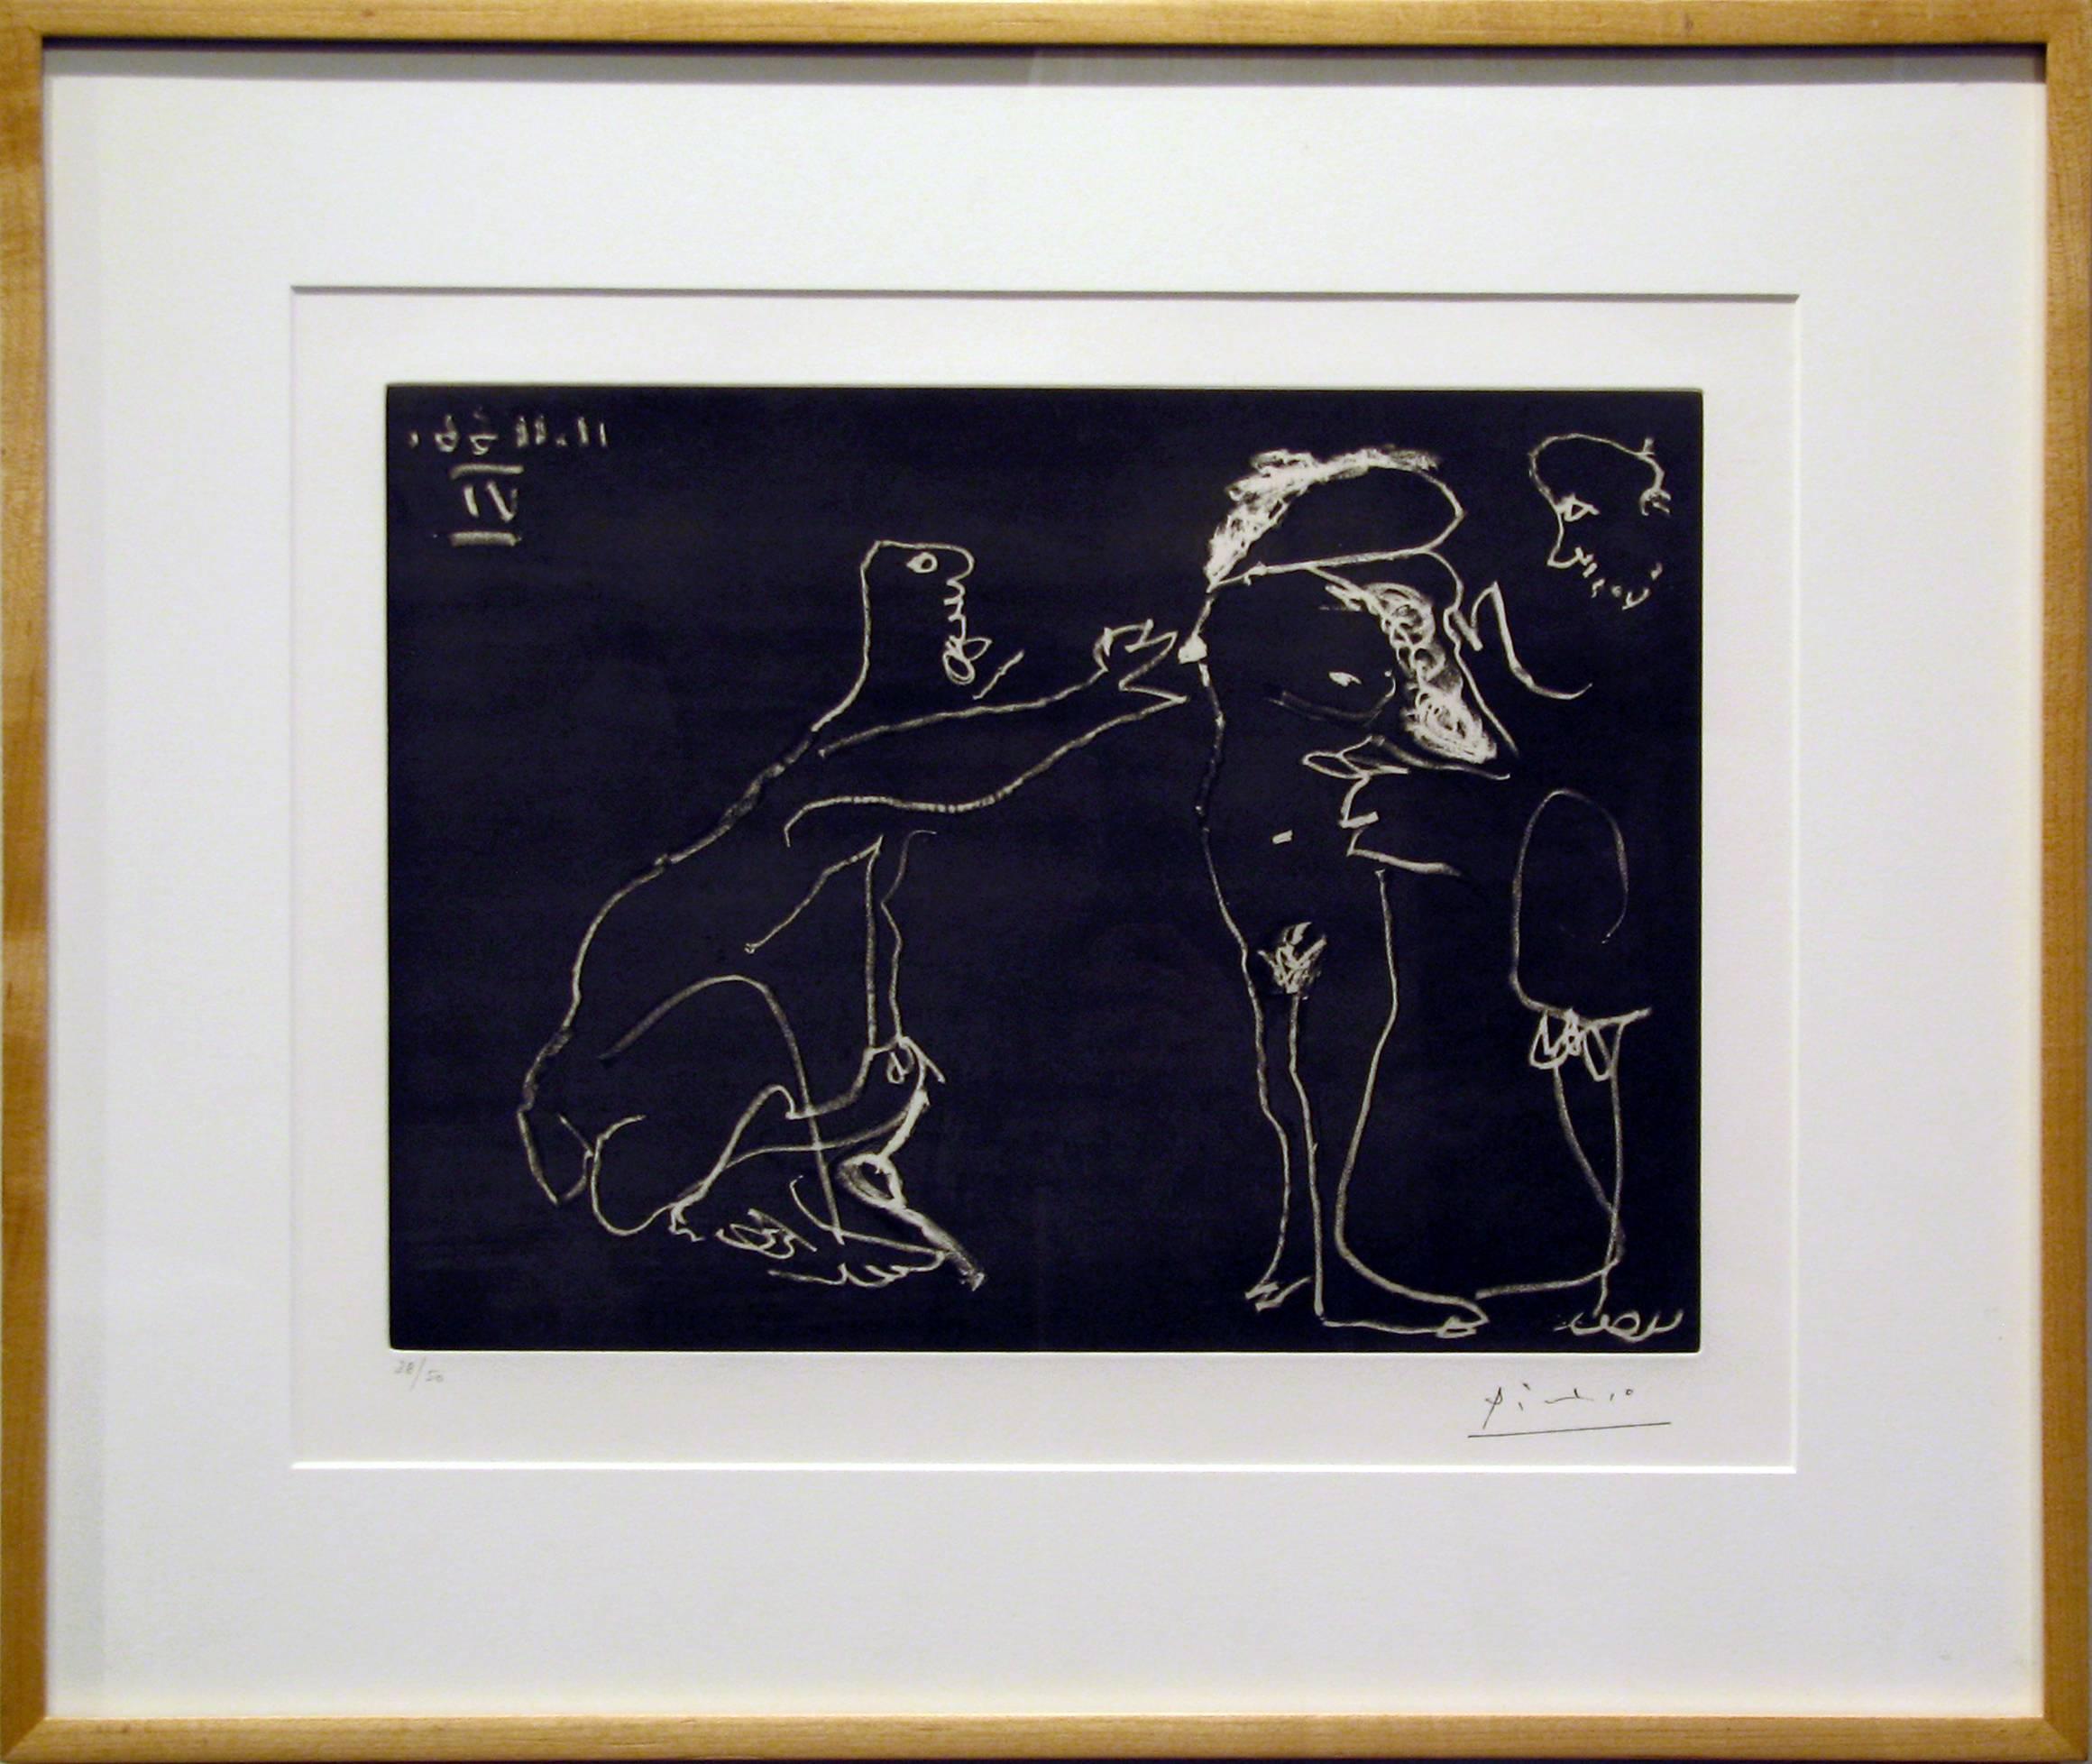 Femme Nue se cachant le visage, avec deux hommes - Print by Pablo Picasso